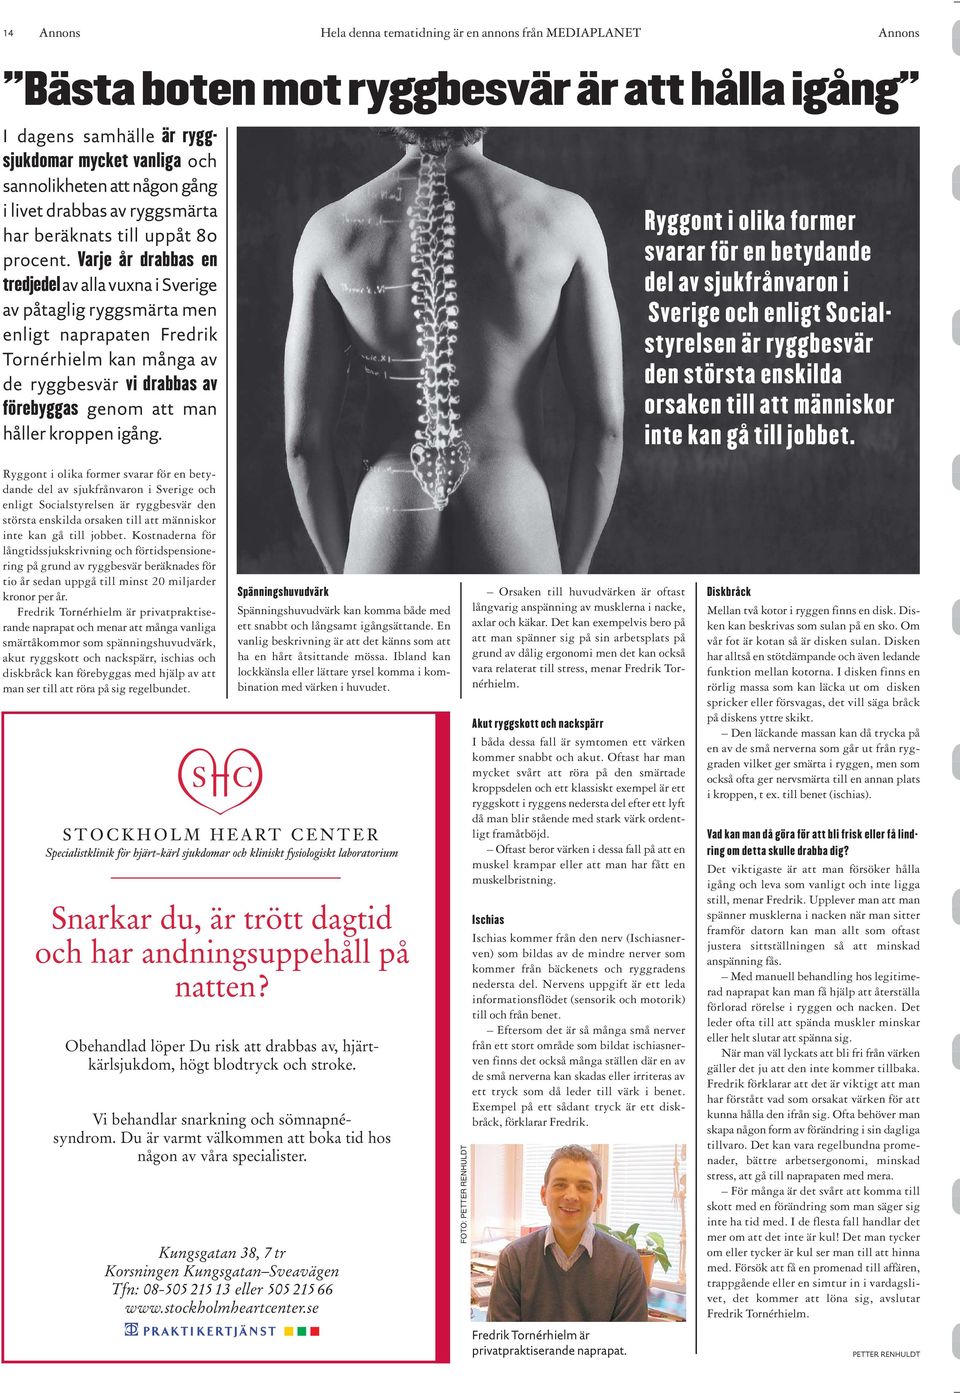 Varje år drabbas en tredjedel av alla vuxna i Sverige av påtaglig ryggsmärta men enligt naprapaten Fredrik Tornérhielm kan många av de ryggbesvär vi drabbas av förebyggas genom att man håller kroppen